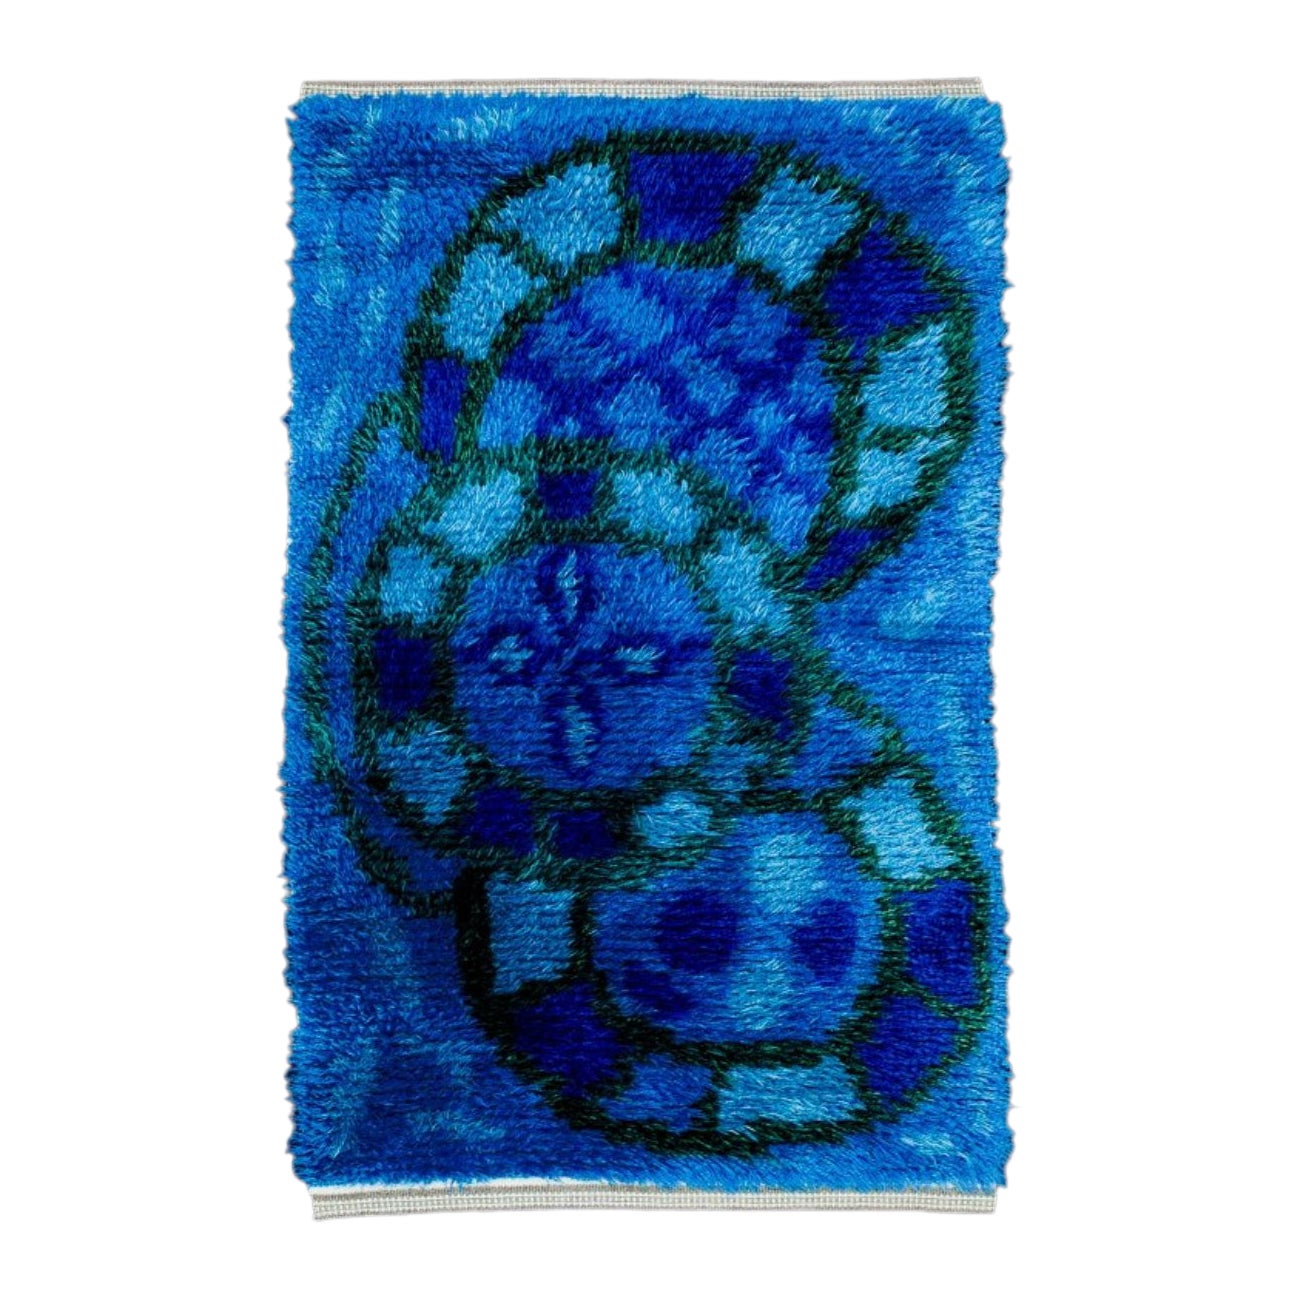 Schwedischer Designer, handgewebter Rya-Teppich in Blau-, Violett- und Grüntönen.